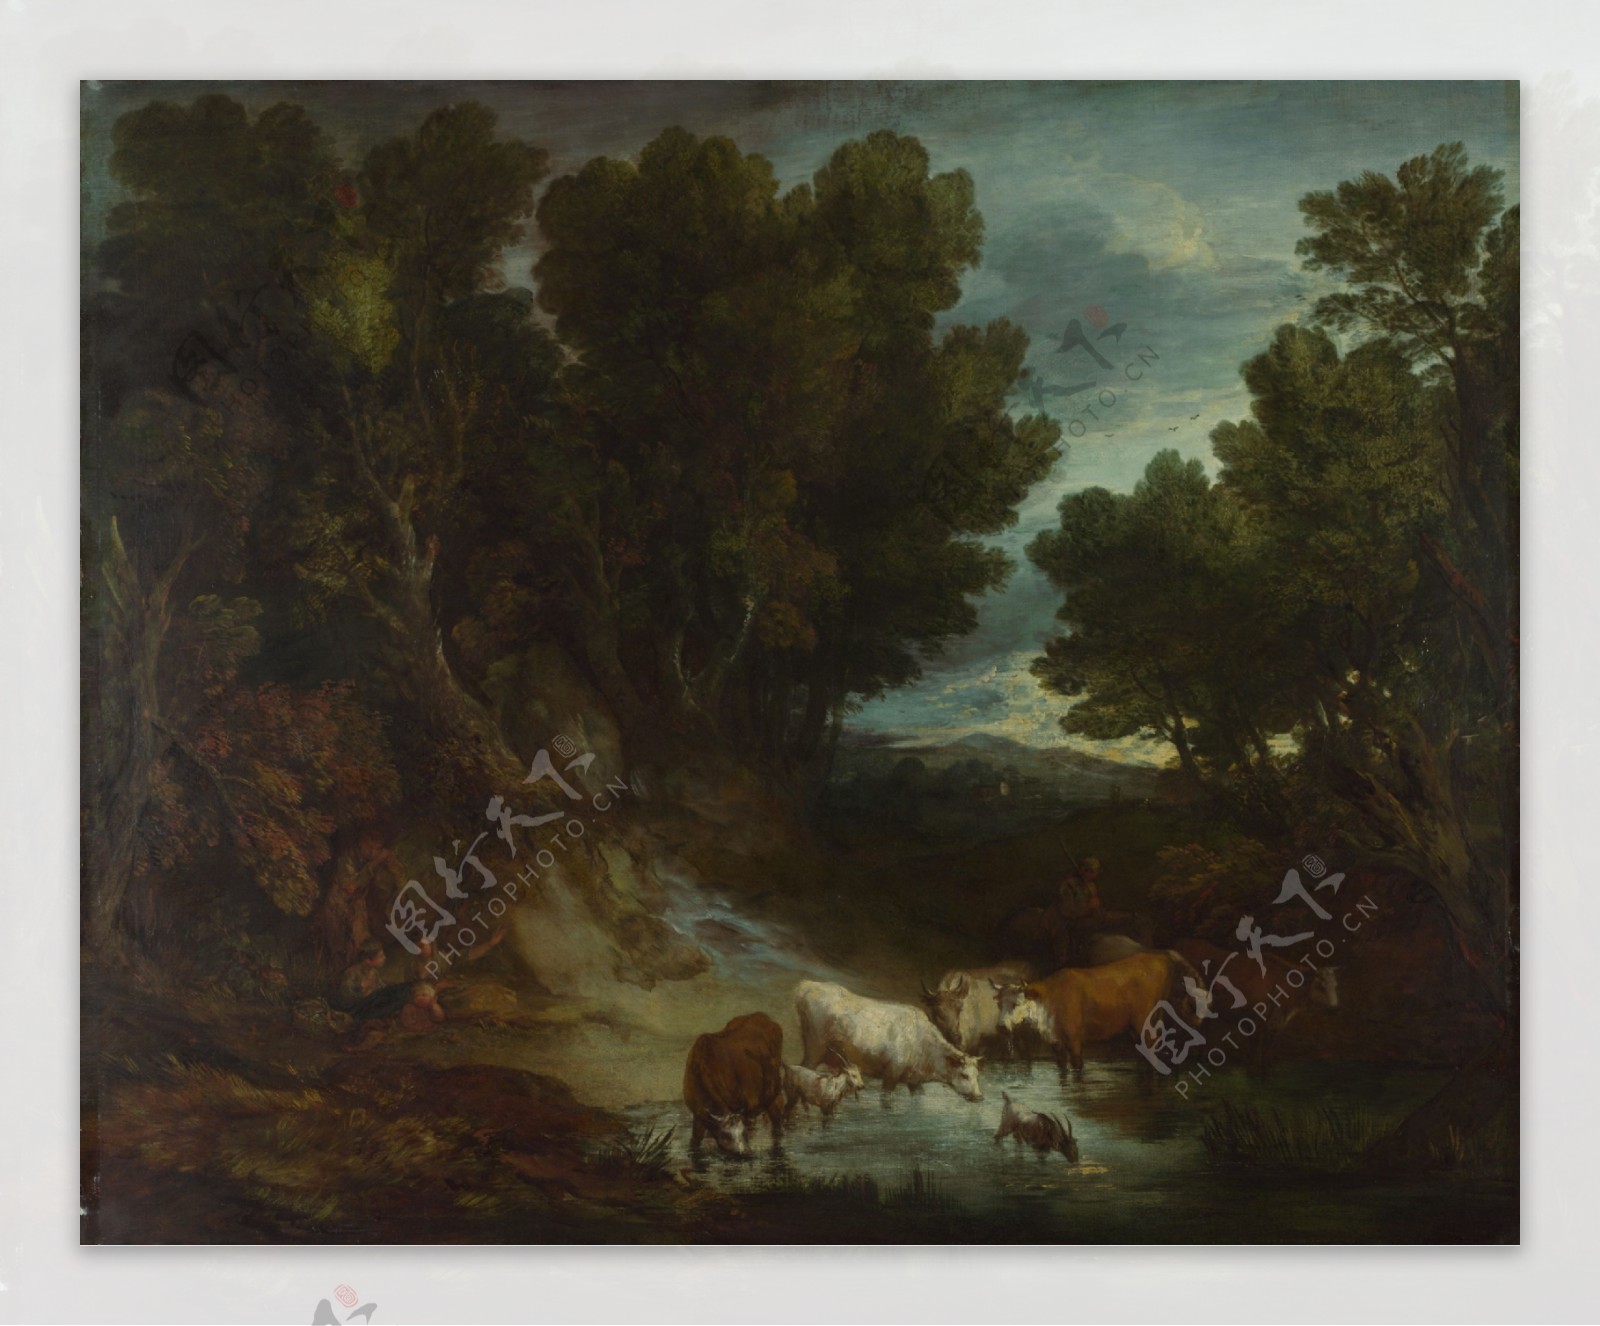 牛群与树木风景油画图片